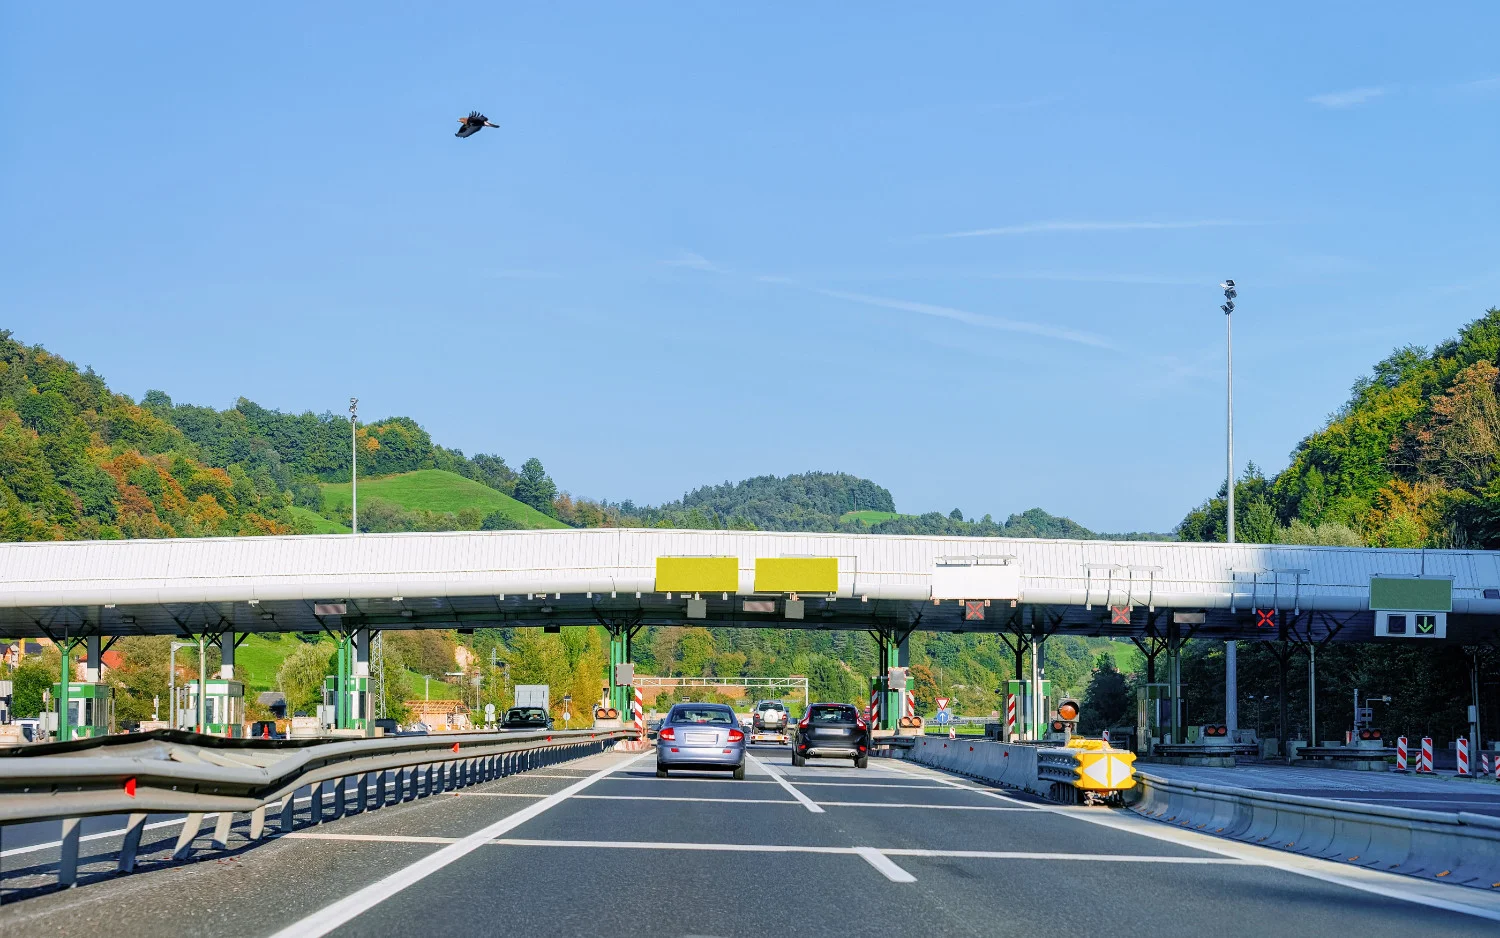  La Slovénie a notamment amélioré son accessibilité pour les touristes en modernisant considérablement le réseau routier.